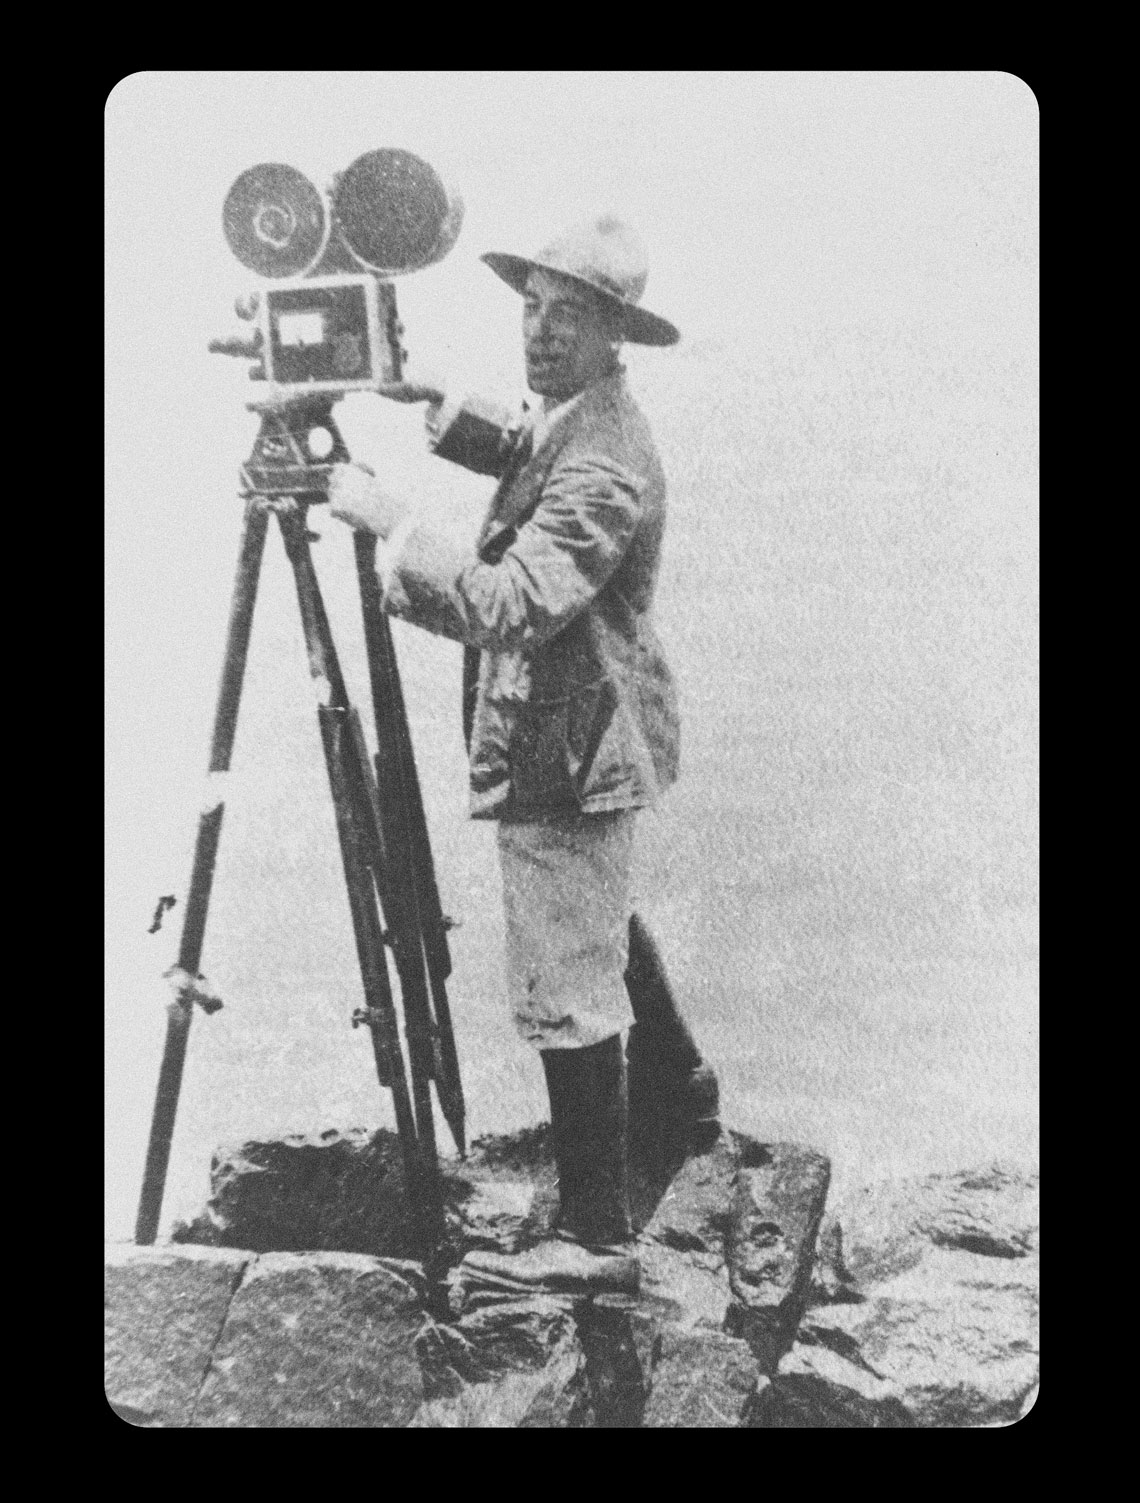 Santos em 1921, no rio Madeira, em Rondônia: estima-se que o cineasta dirigiu mais de 90 filmes, a maioria com imagens da Amazônia